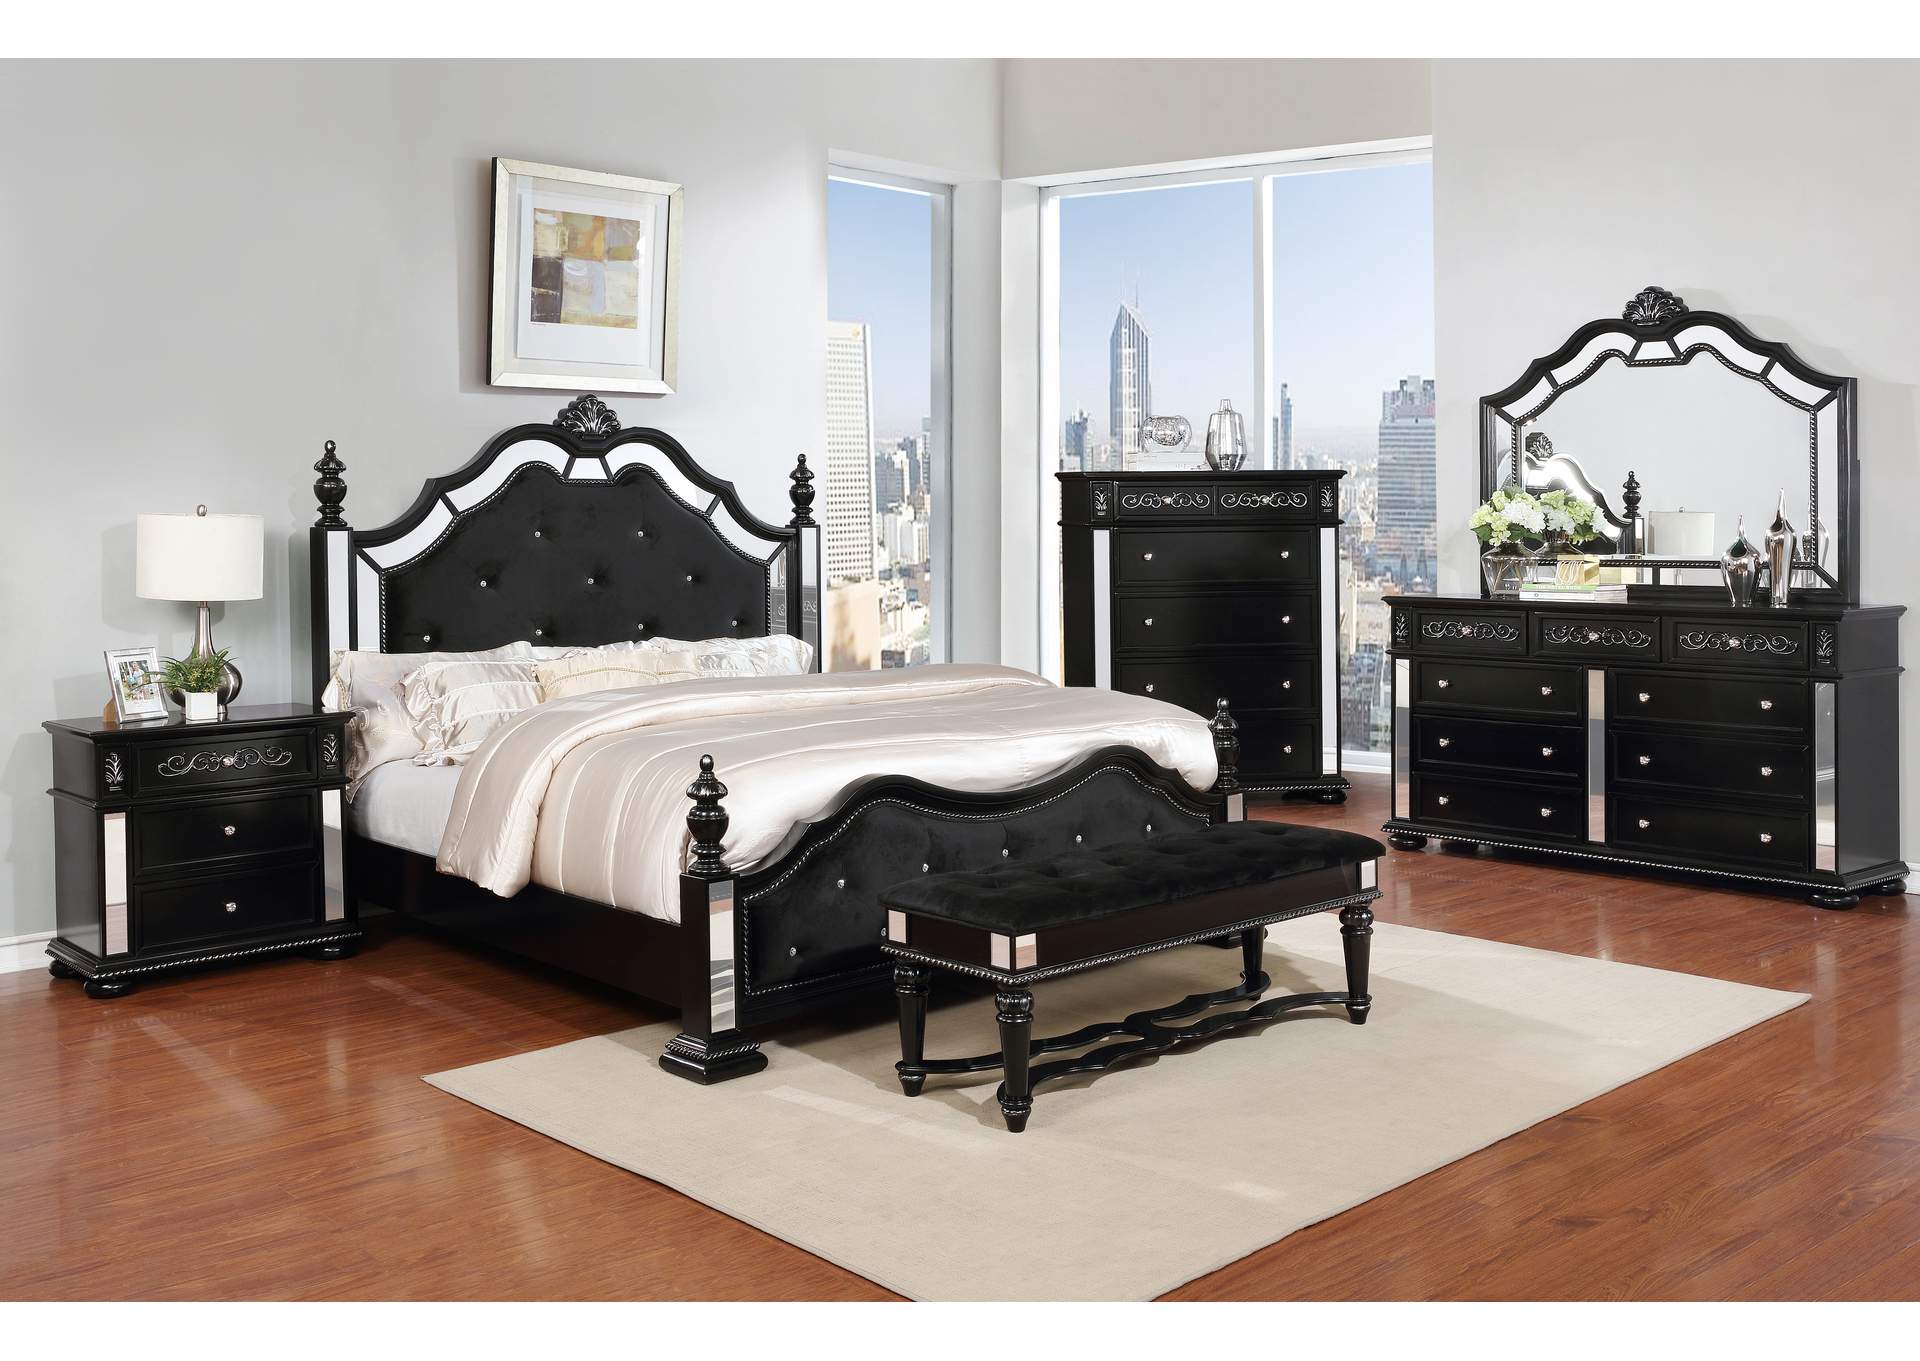 Black Panel Queen 6 Piece Bedroom Set W/ 2 Nightstand, Chest, Dresser & Mirror,Global Trading